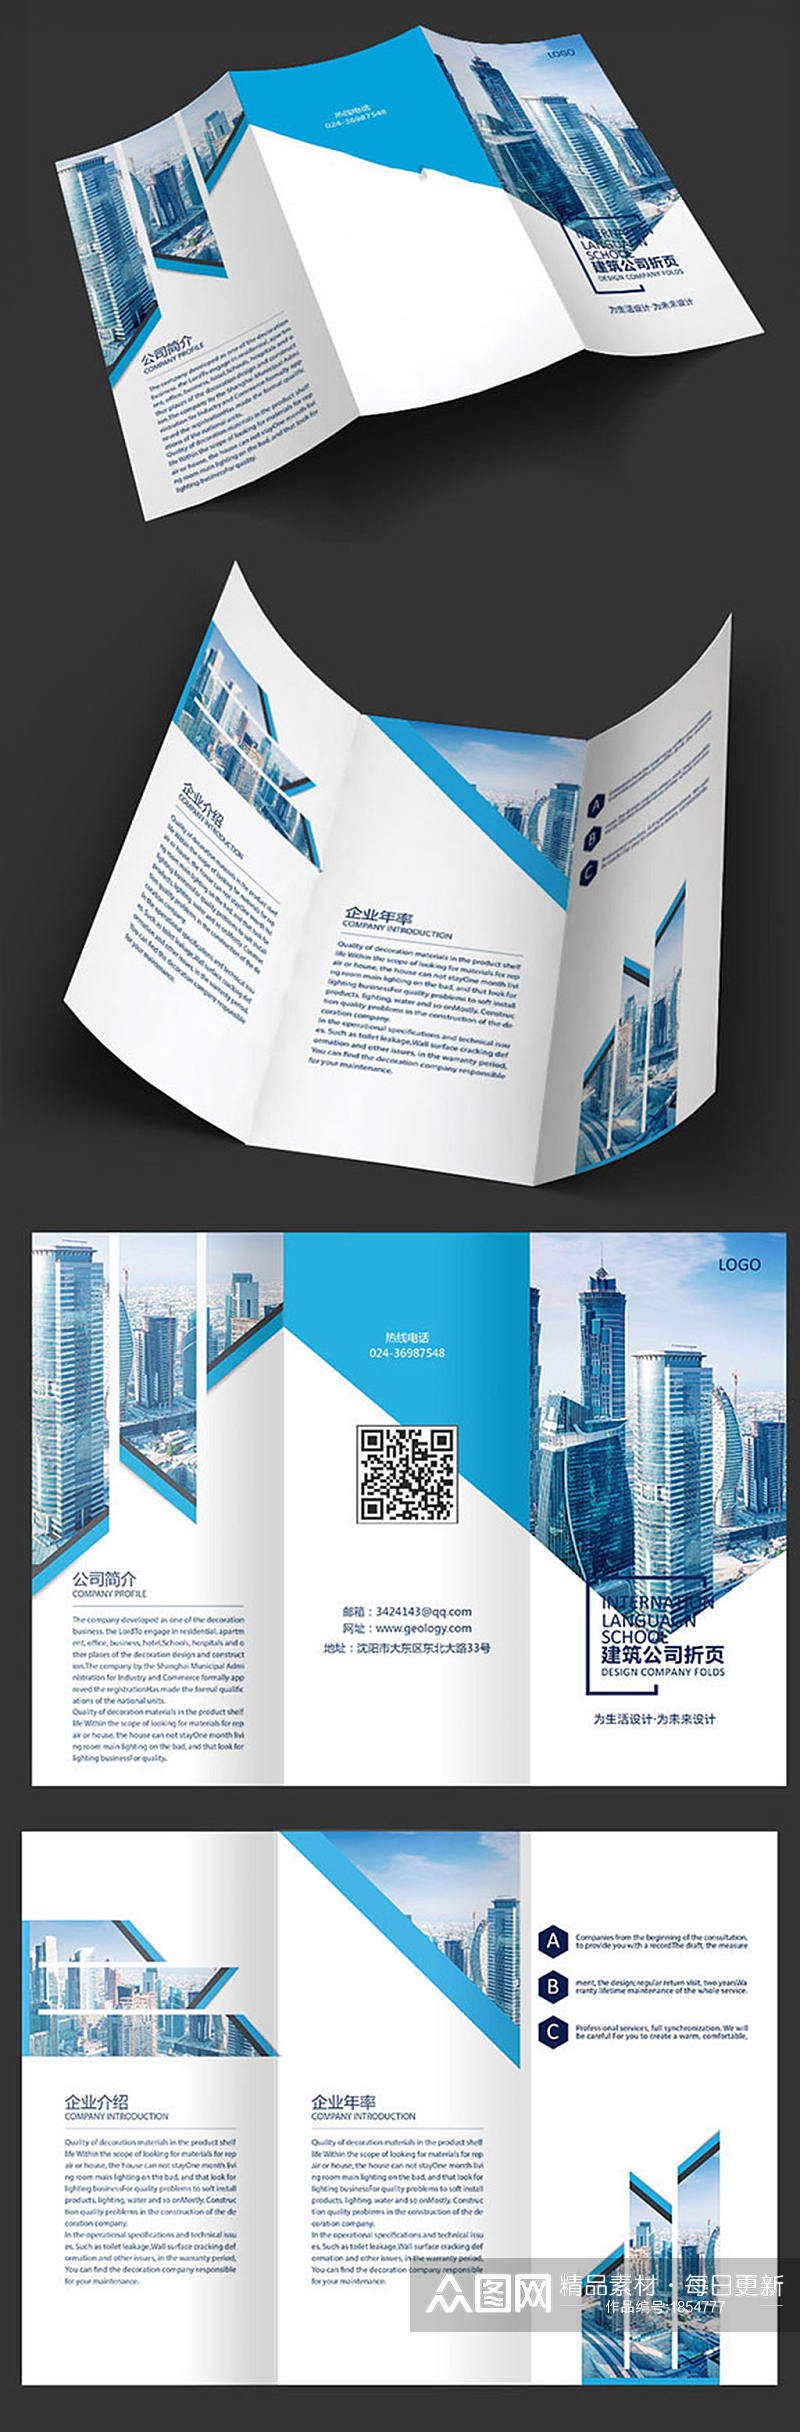 建筑公司三折页设计素材